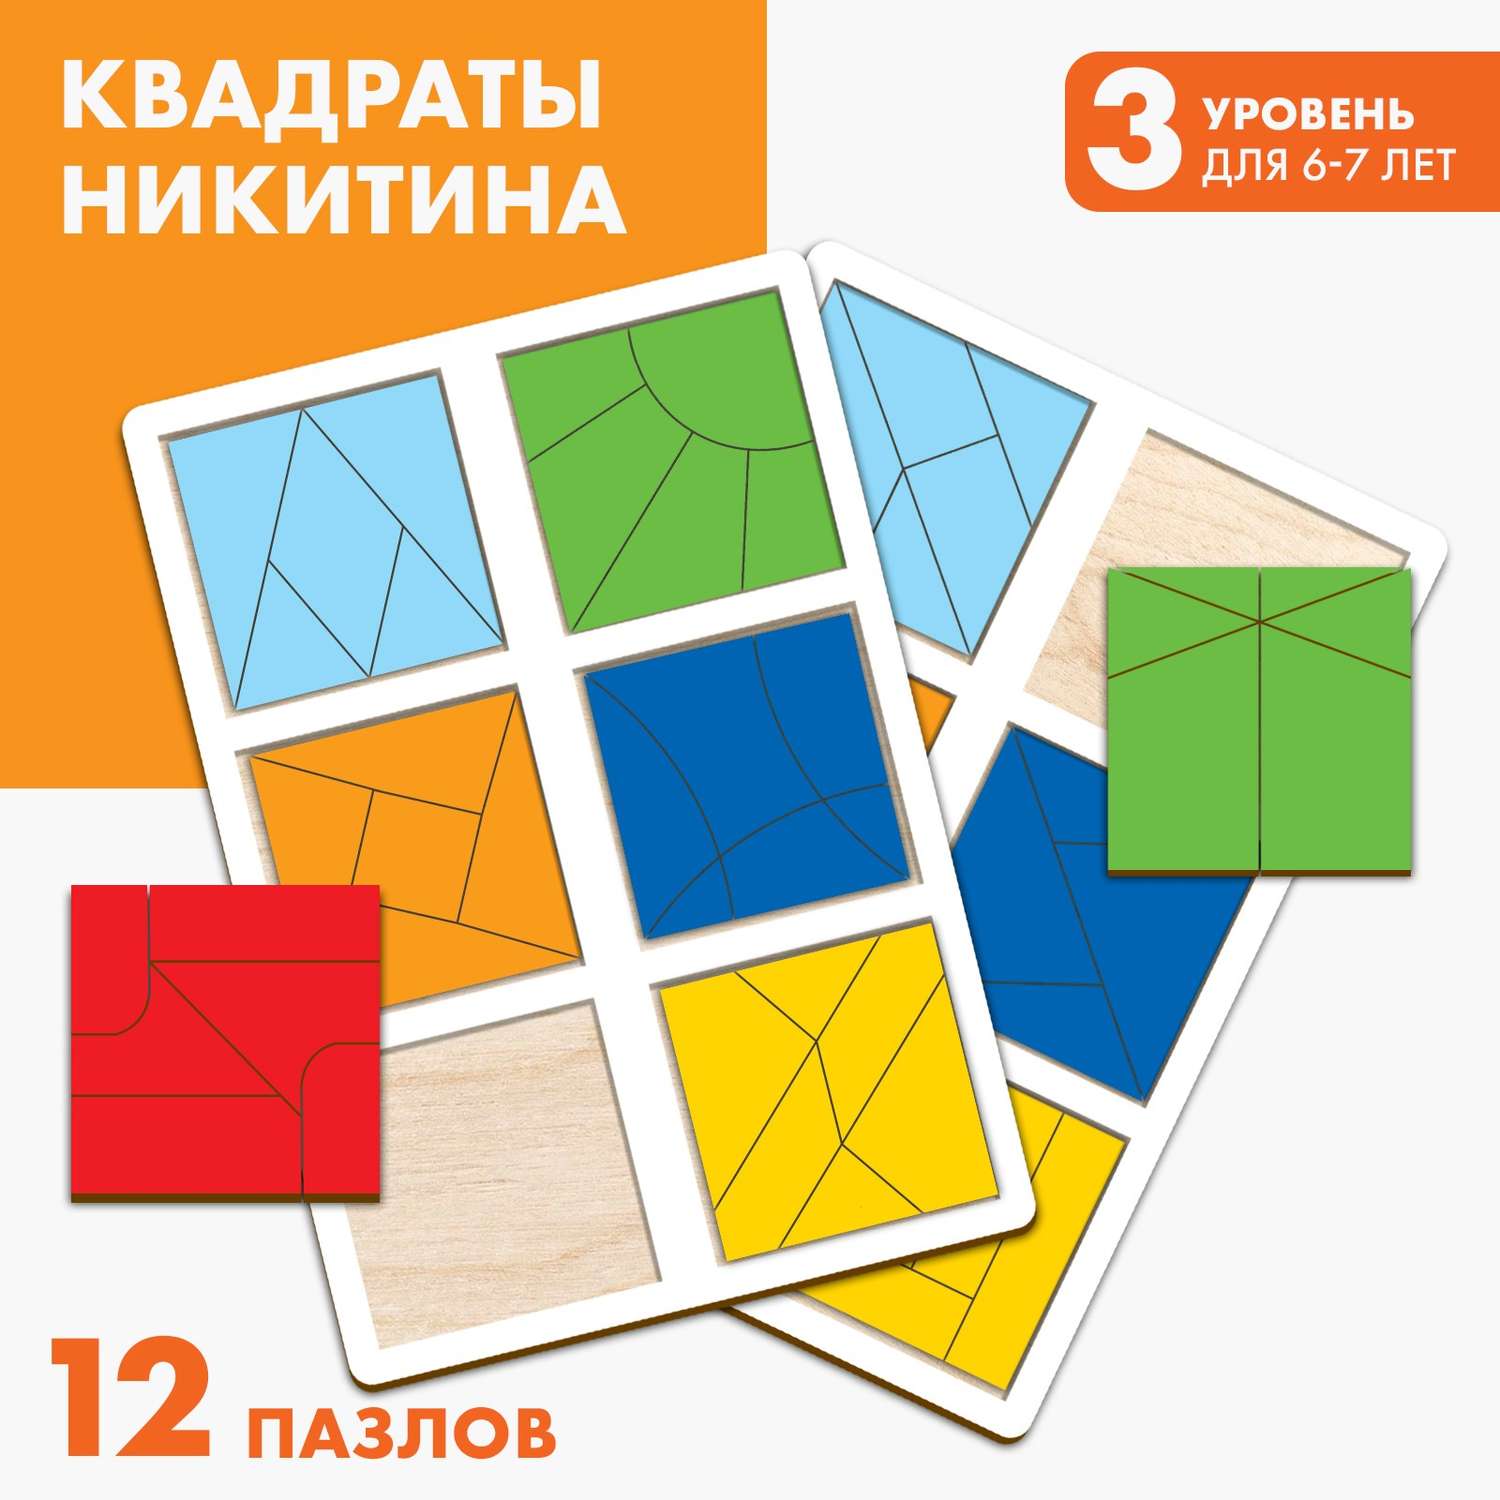 Квадраты Лесная мастерская 3 уровень (2 шт.) 12 квадратов - фото 1